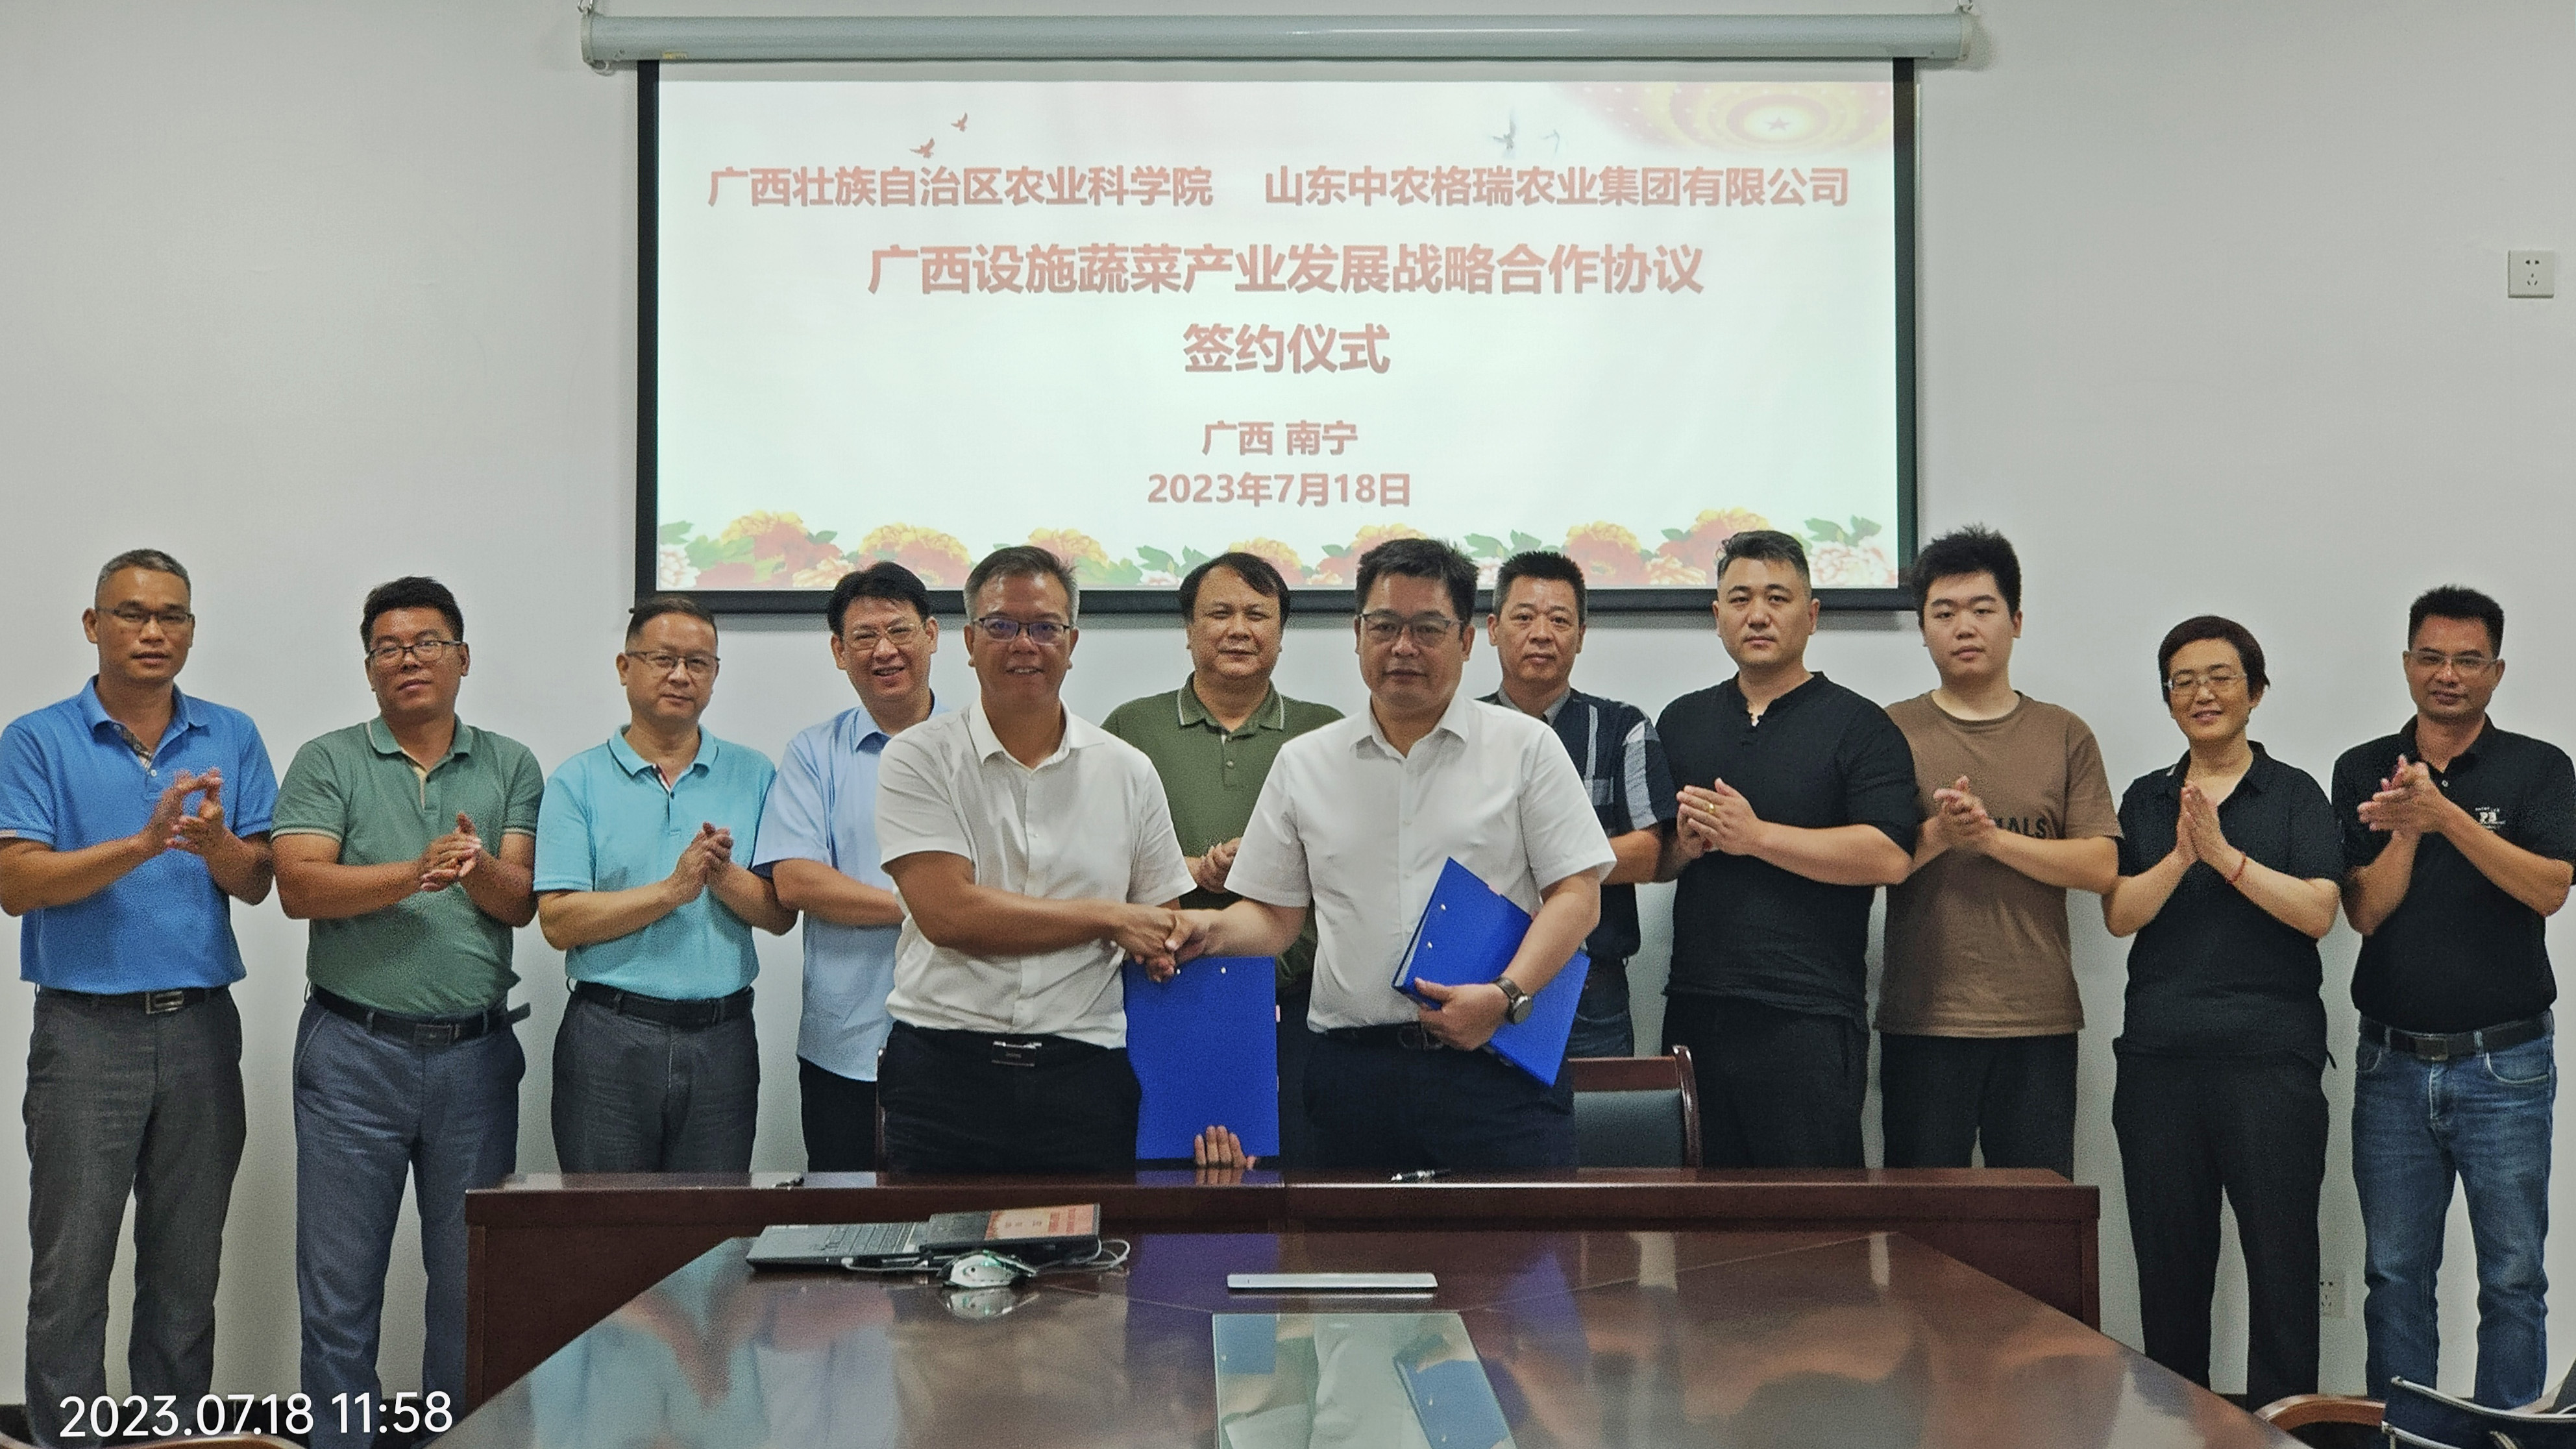 广西农业科学院与山东中农格瑞农业集团有限公司签订合作协议